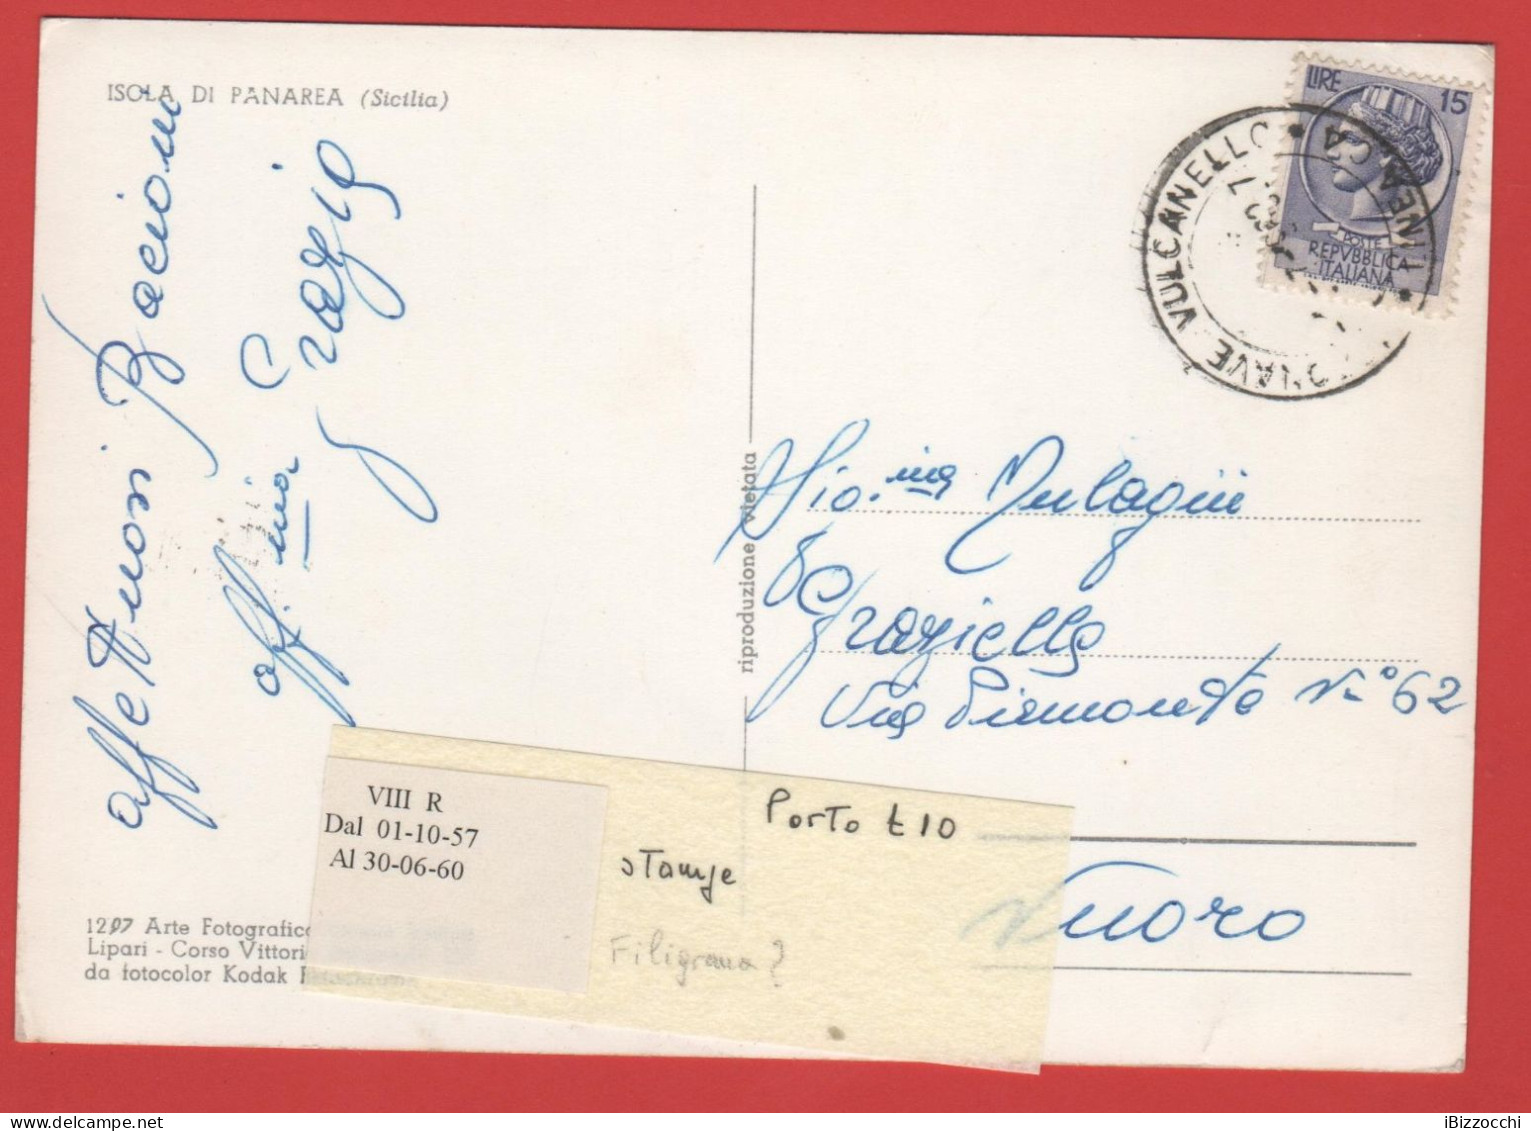 ITALIA - Storia Postale Repubblica - 1958 -  15 Antica Moneta Siracusana - Cartolina Dell'Isola Di Panarea  - Viaggiata - 1946-60: Marcofilia